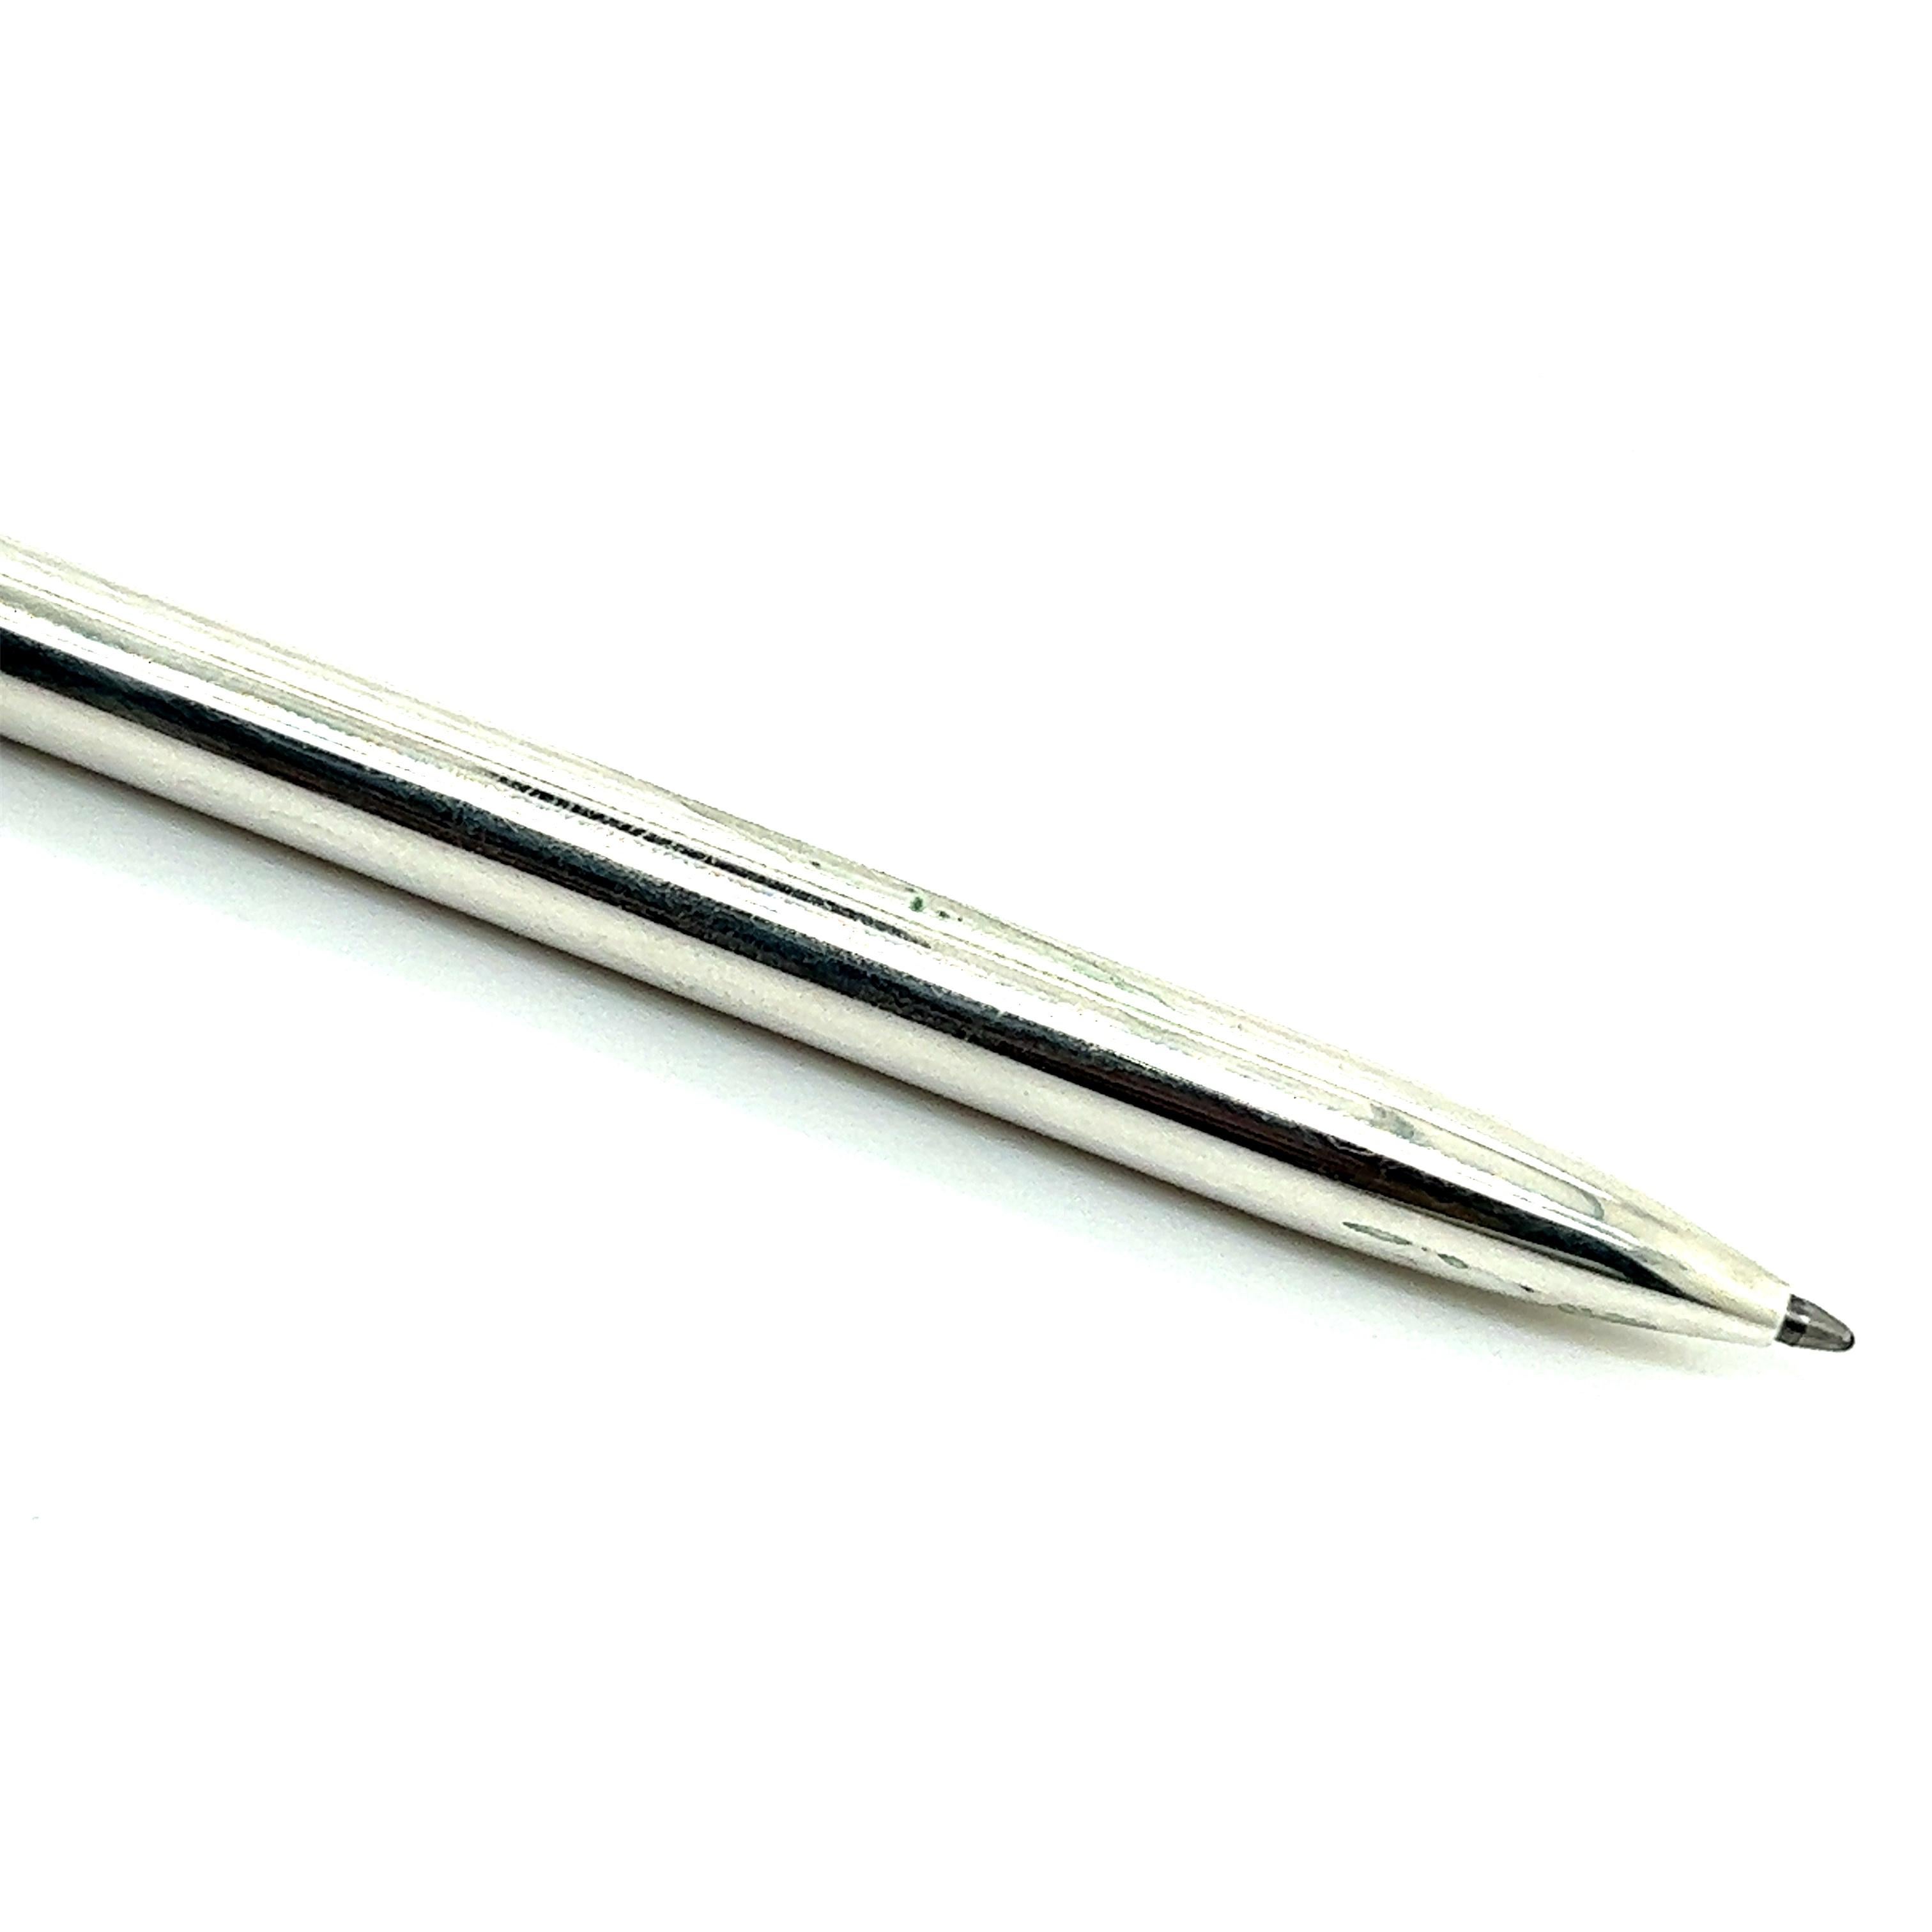 tiffany ballpoint pen in sterling silver